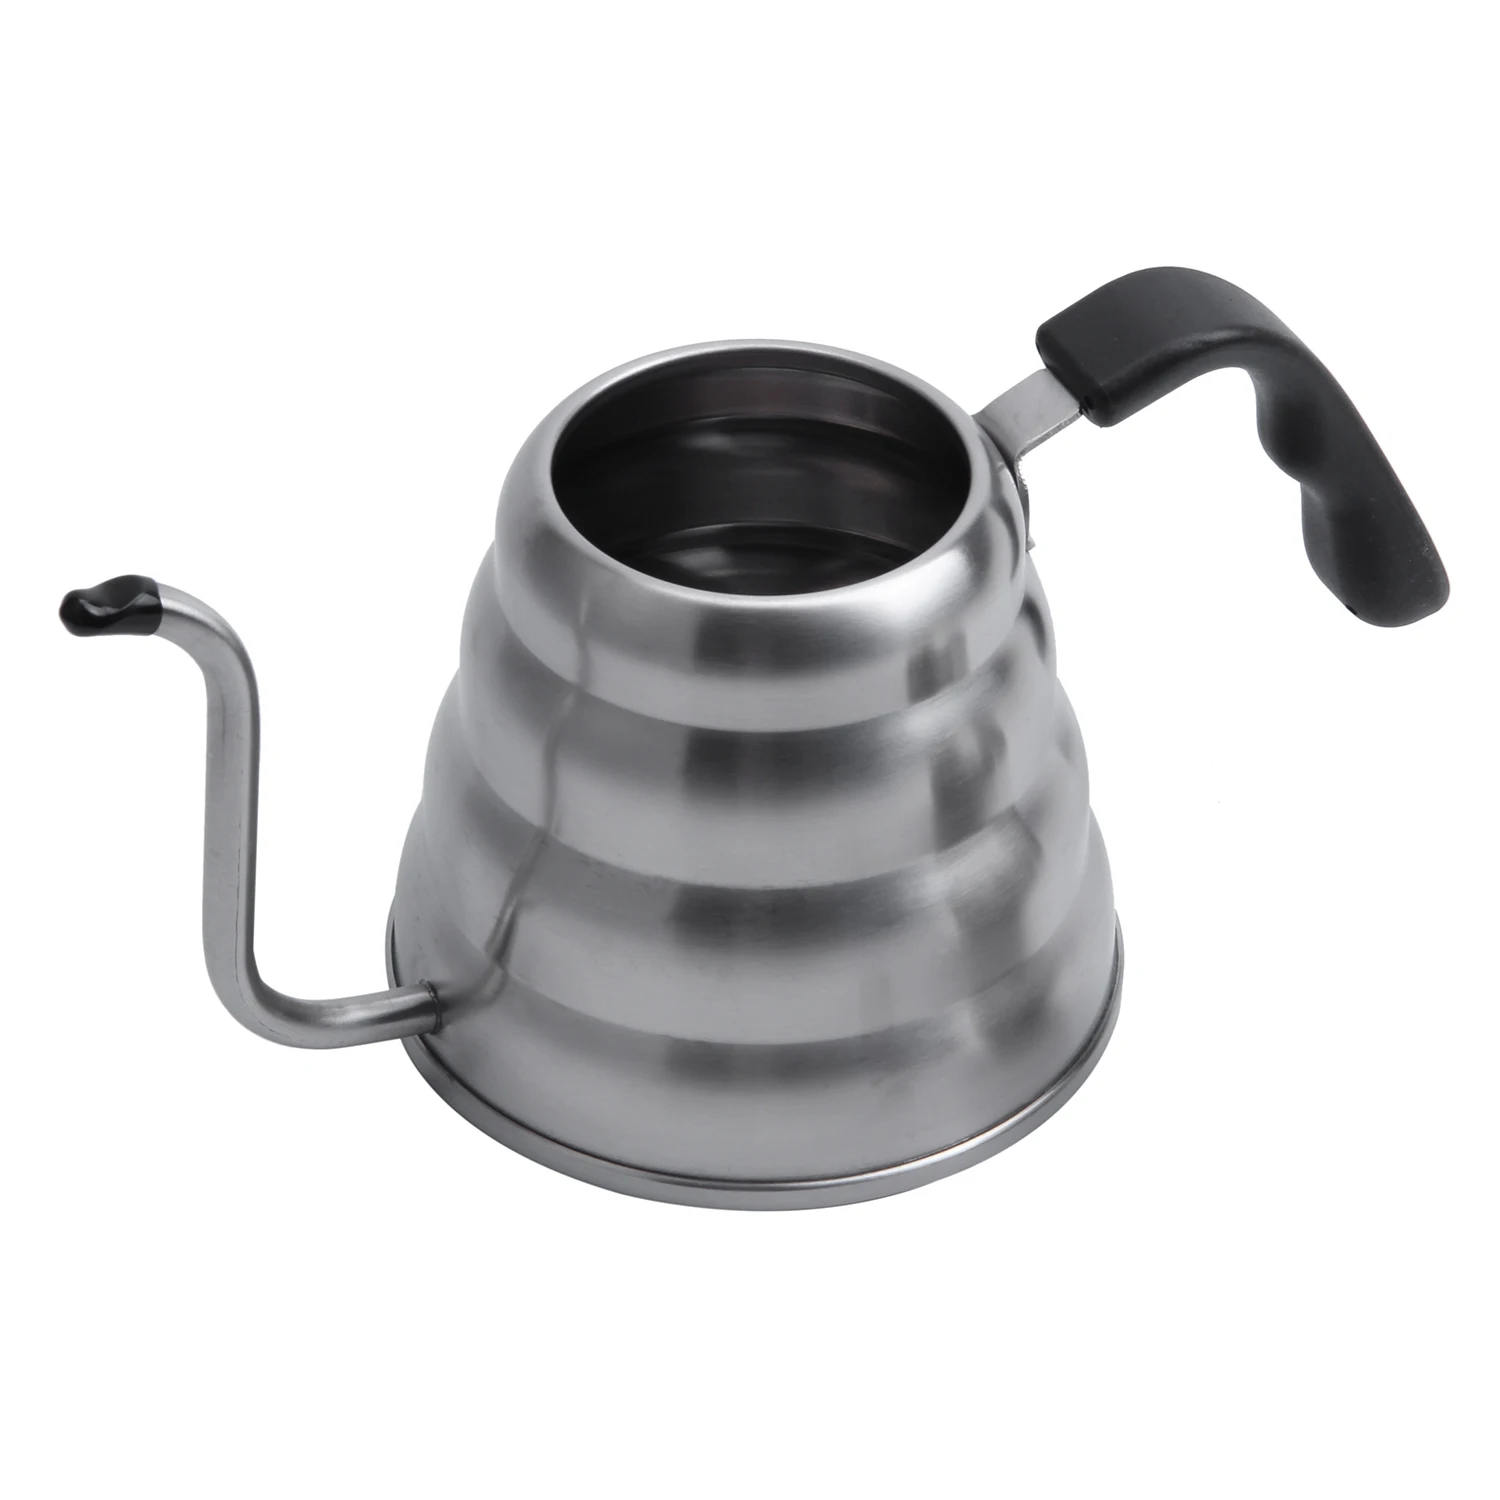 Премиум залейте Кофе чайник с точной температурой 40 флуза-гусиная шея чайник-5 чашек из нержавеющей стали чайник для St